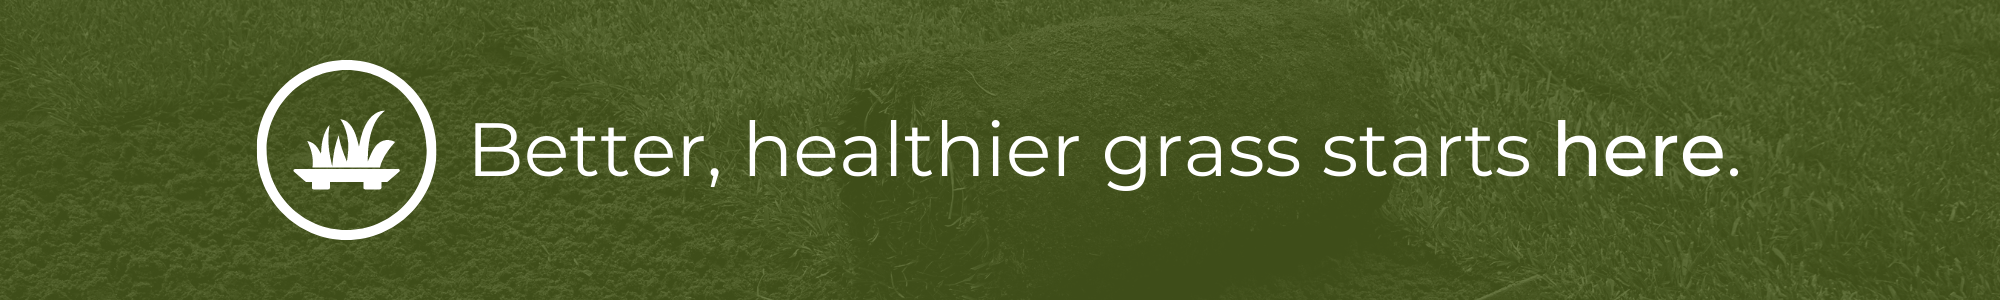 Better, healthier grass starts here.